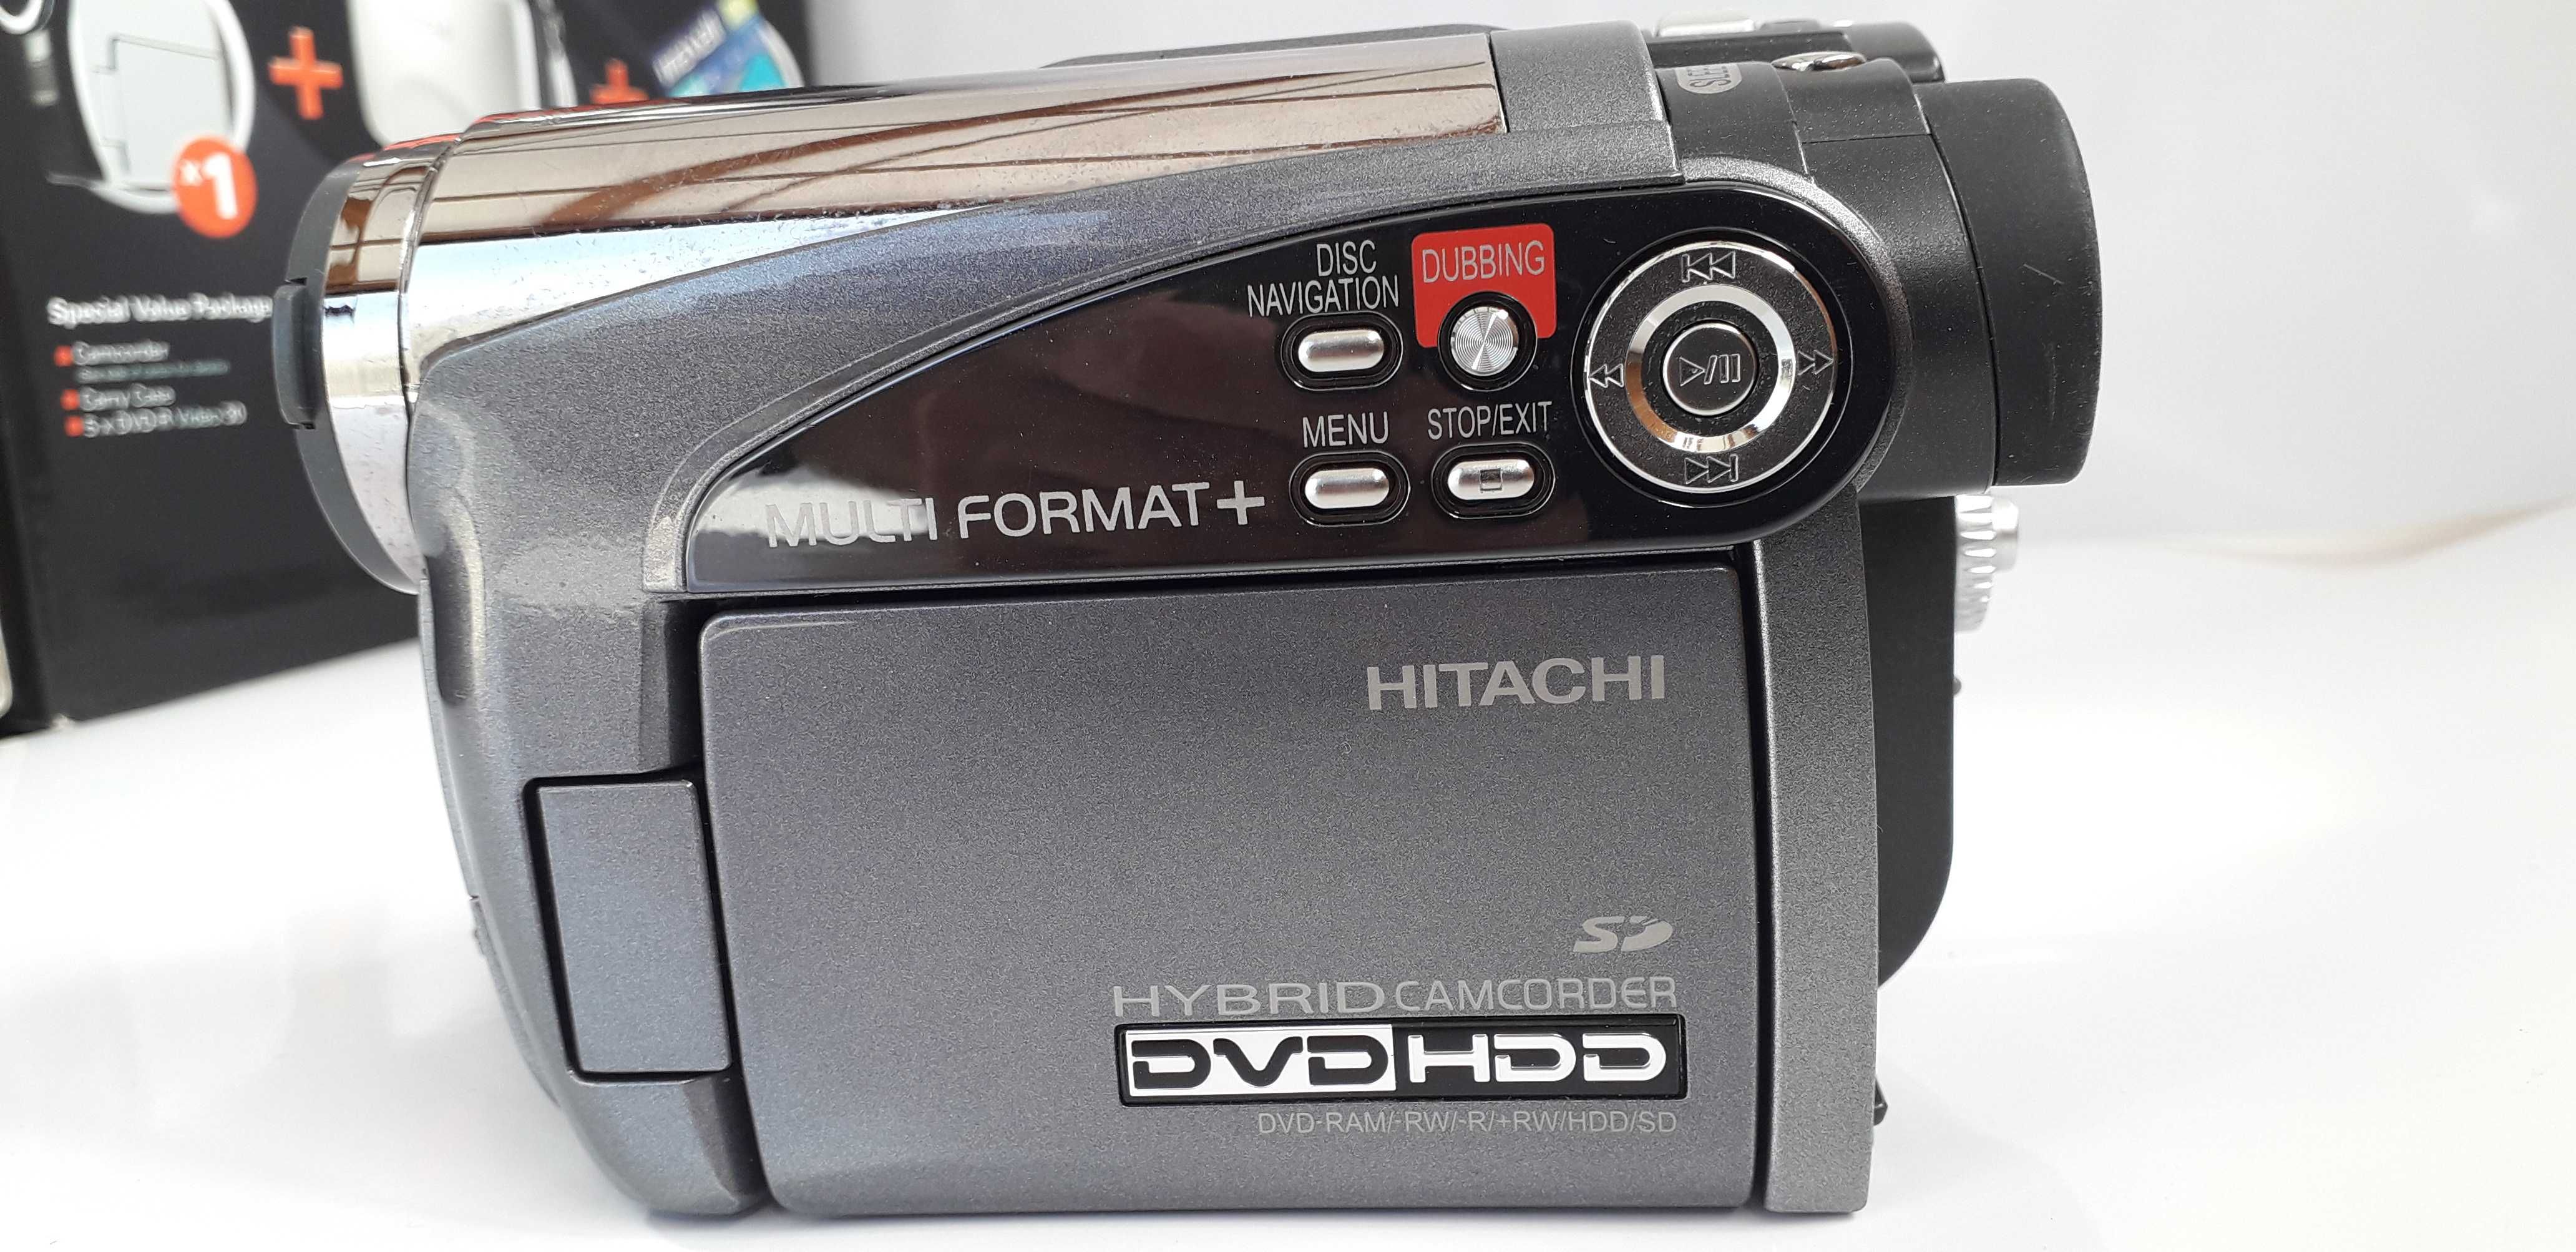 Camera video Hitachi model dz – hs501e